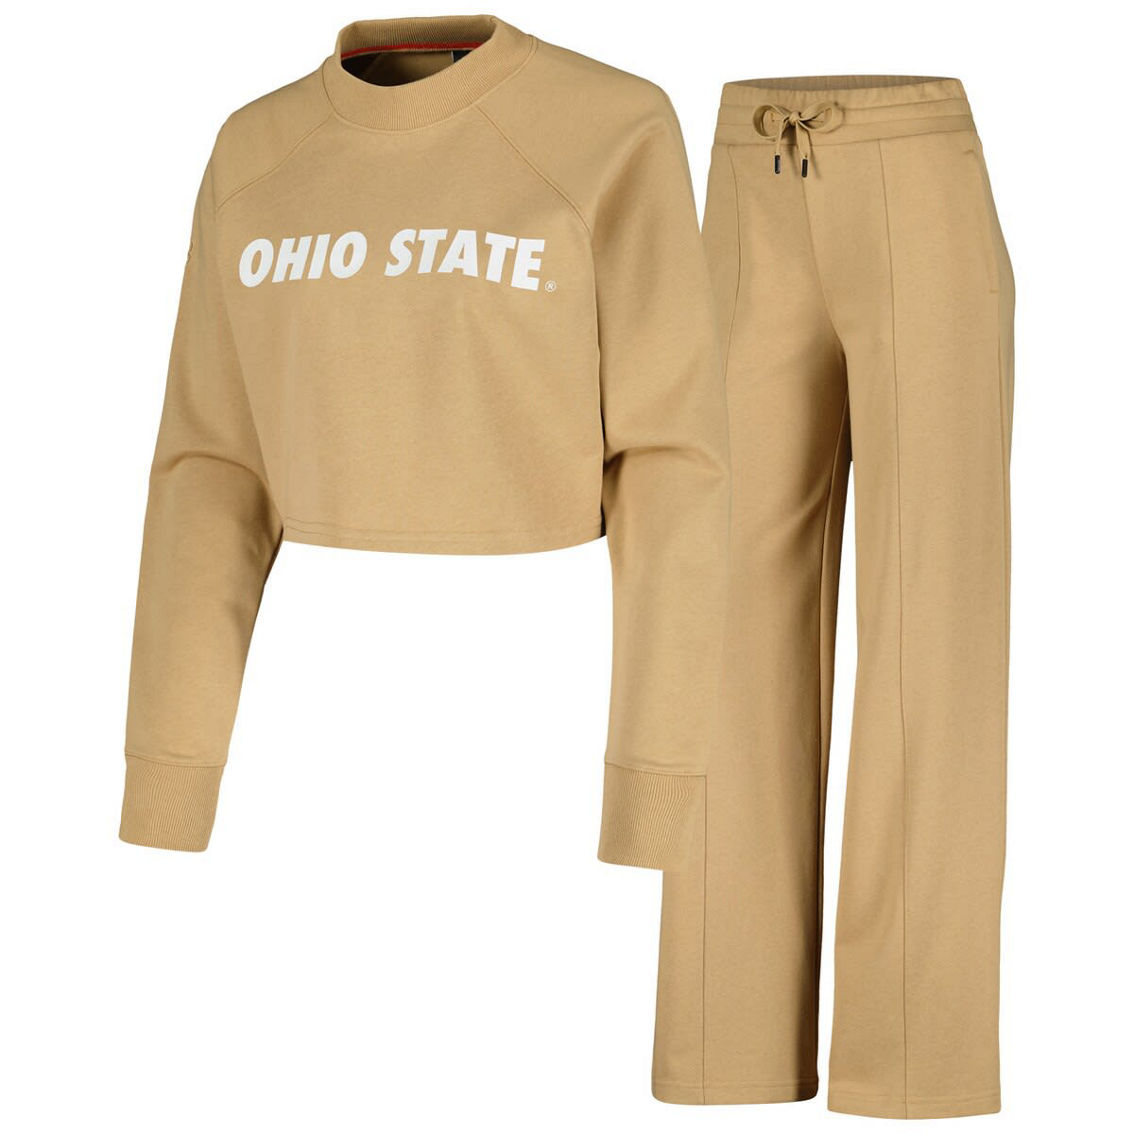 KadyLuxe Women's Tan Ohio State Buckeyes Raglan Cropped Sweatshirt & Sweatpants Set - Image 2 of 4